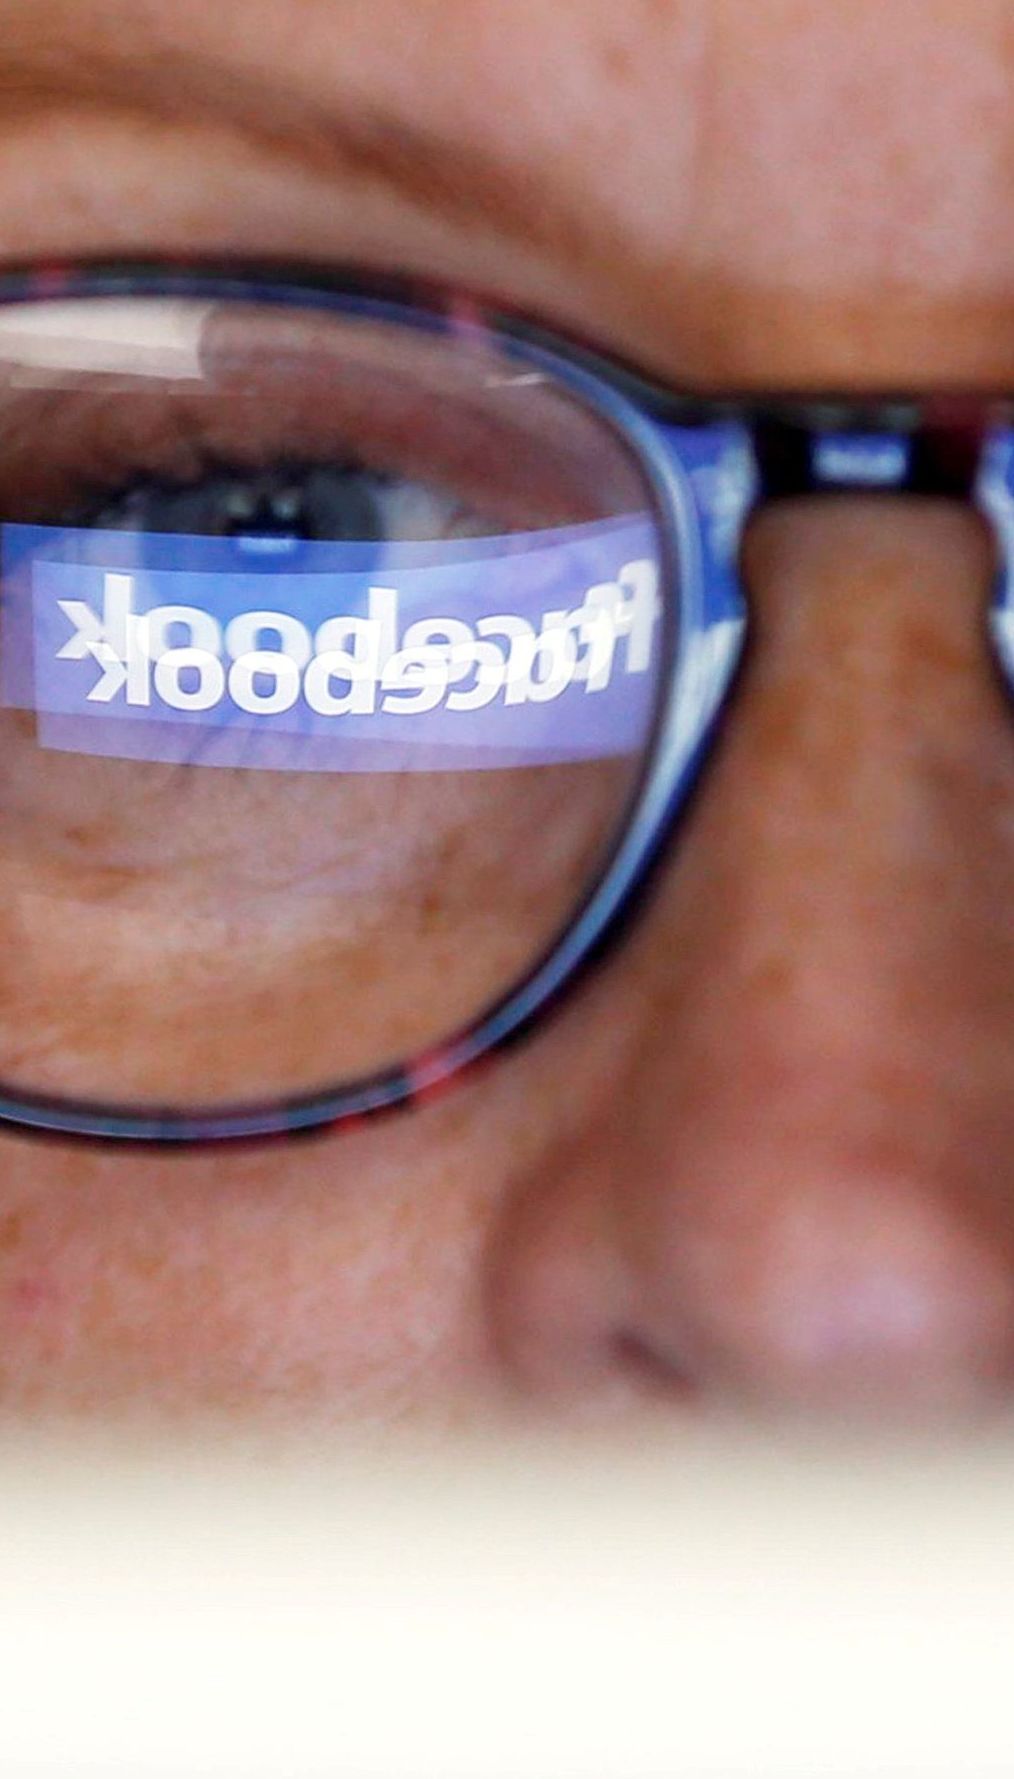 Facebook впервые заблокировал десятки аккаунтов в РФ - СМИ